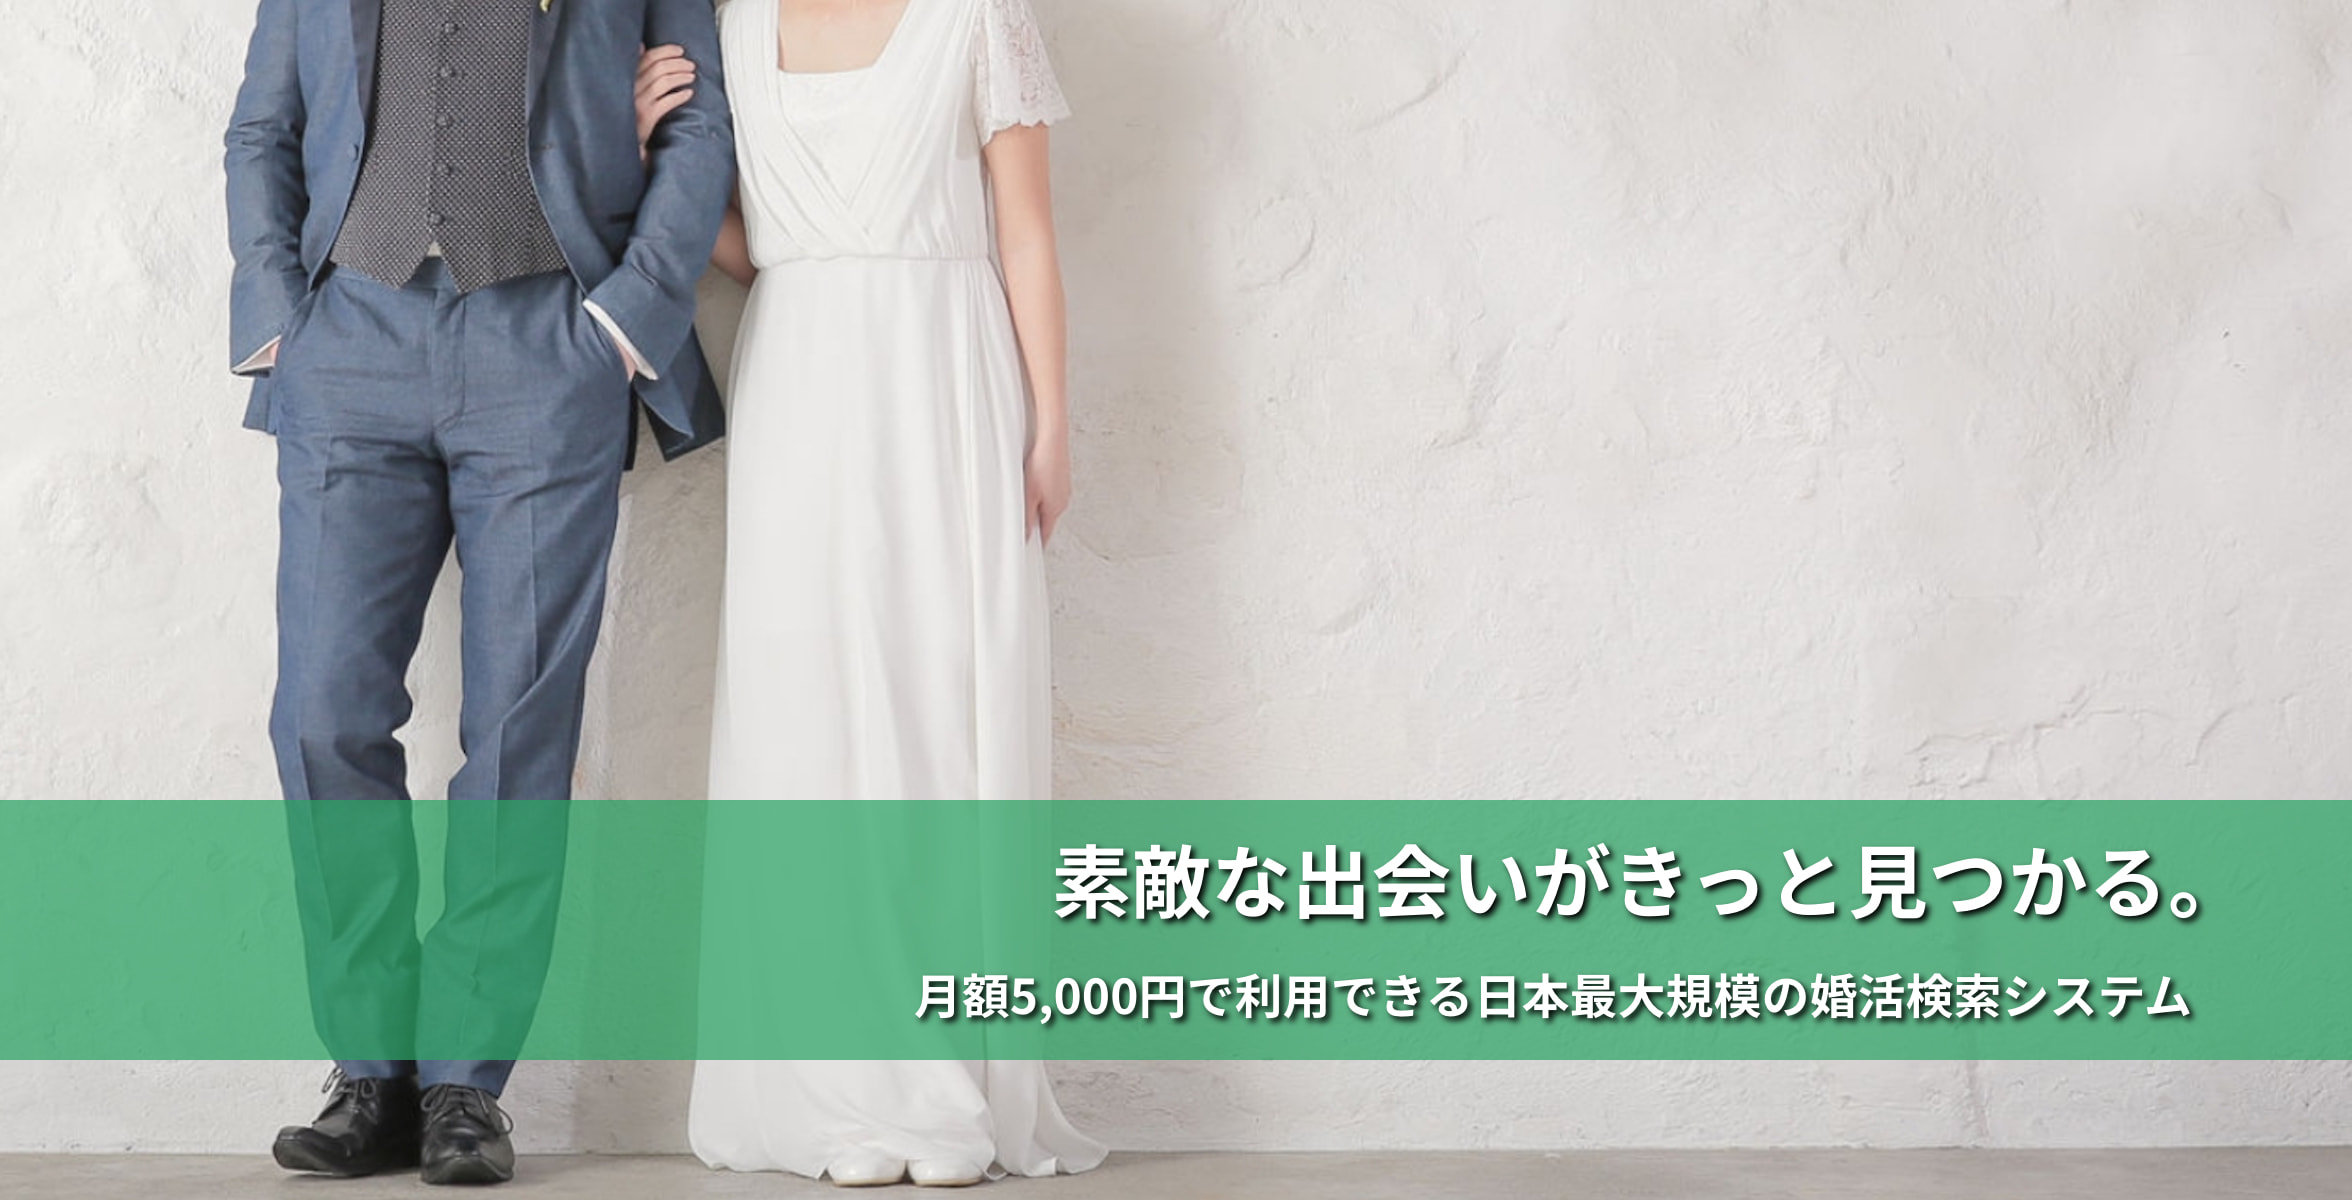 素敵な出会いがきっと見つかる。月額5,000円で利用できる日本最大規模の婚活検索システム